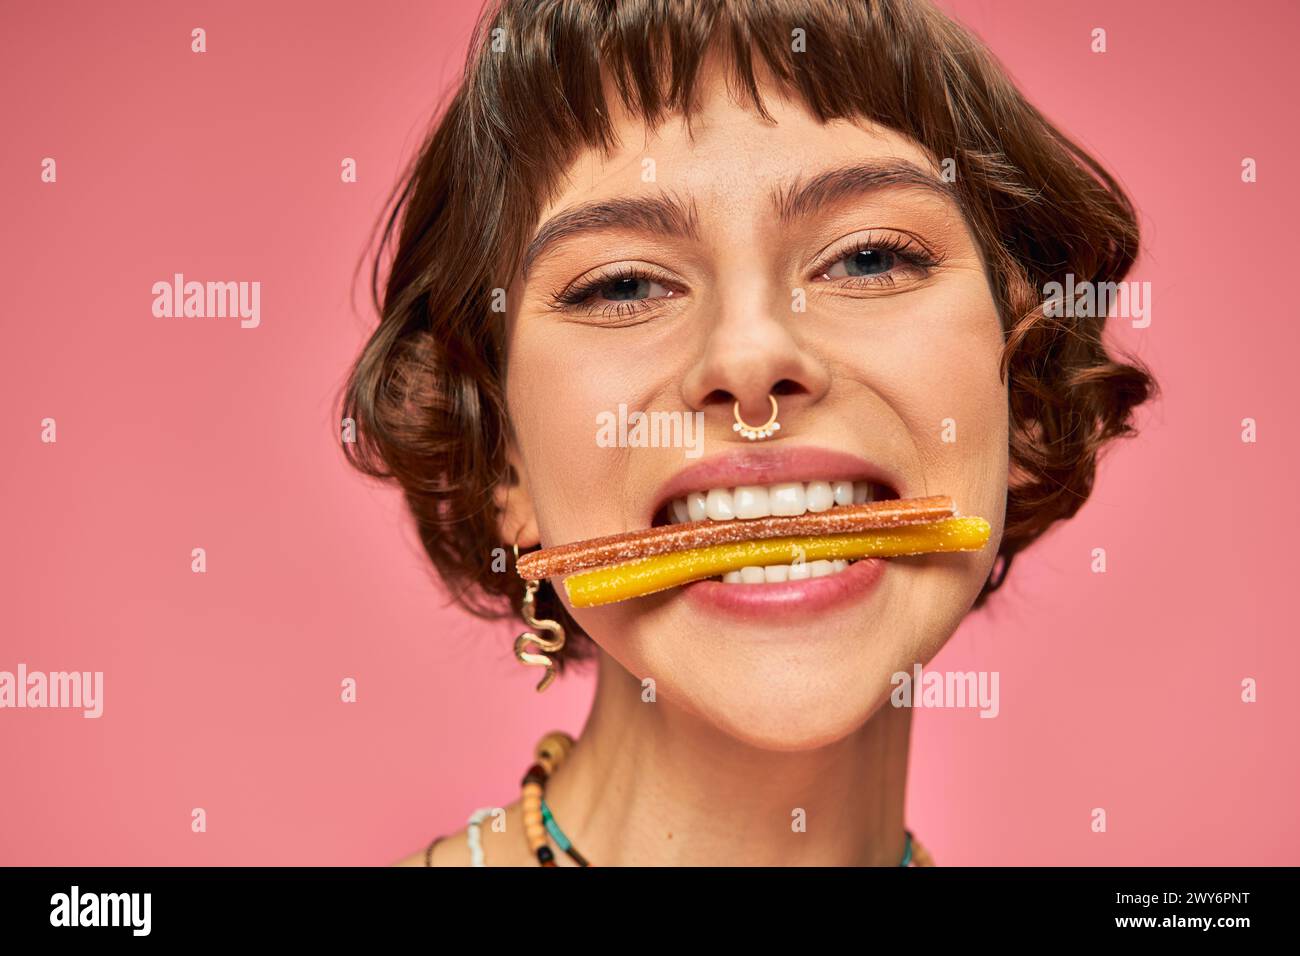 Nahaufnahme einer glücklichen Frau in ihren 20ern mit süßen und sauren Süßigkeiten in ihren weißen Zähnen auf rosa Hintergrund Stockfoto